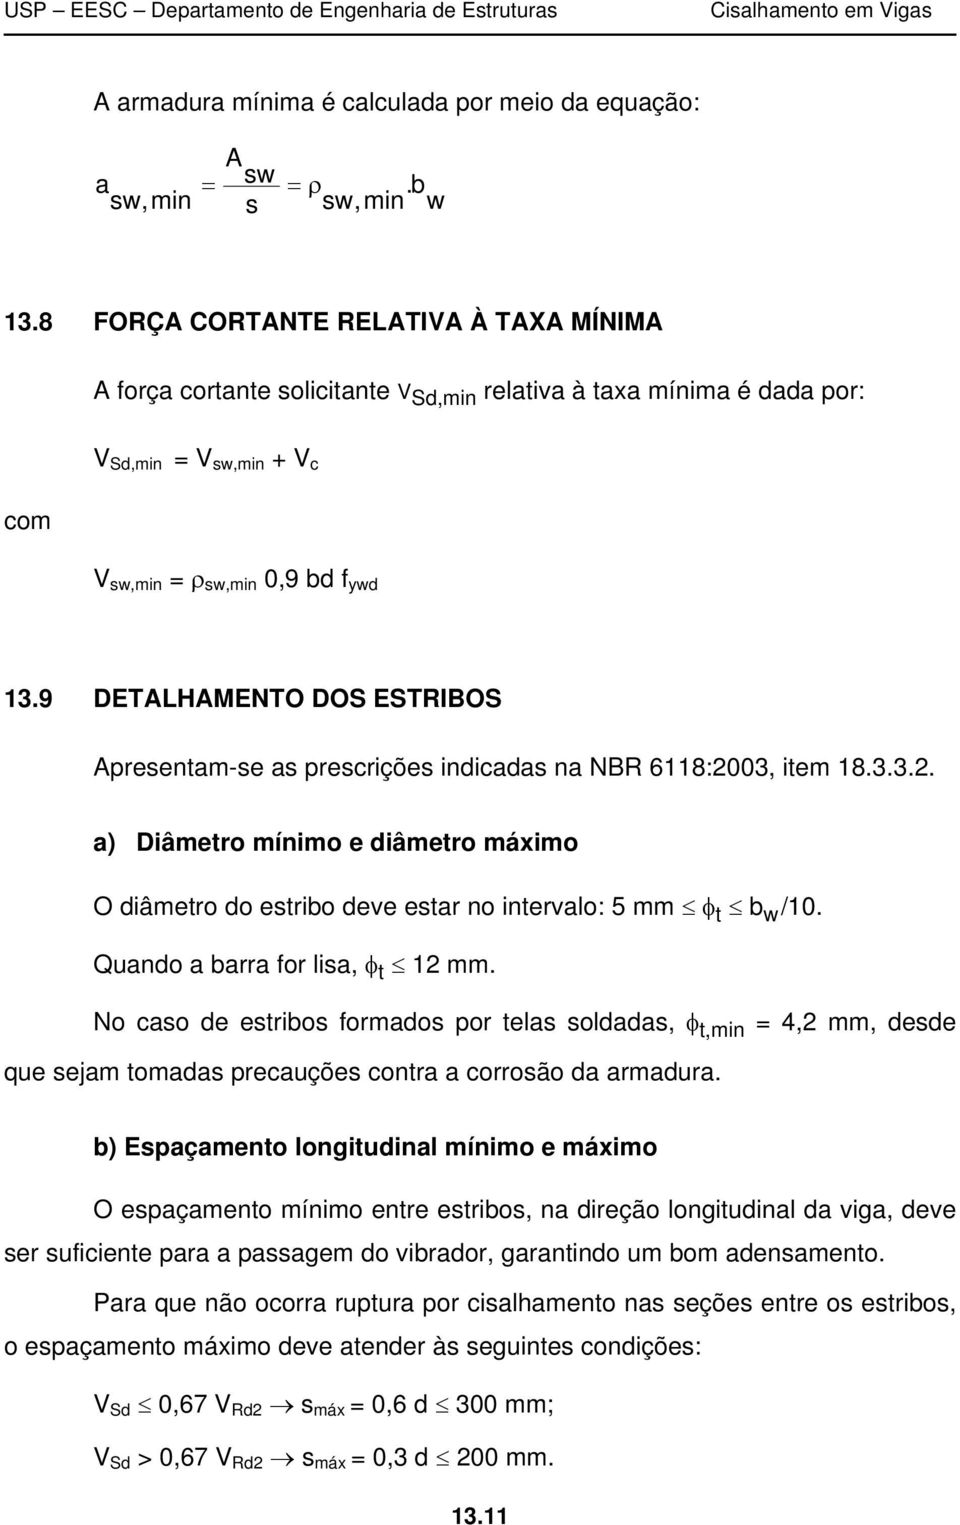 9 DETALHAMENTO DOS ESTRIBOS Apresentam-se as prescrições indicadas na NBR 6118:2003, item 18.3.3.2. a) Diâmetro mínimo e diâmetro máximo O diâmetro do estribo deve estar no intervalo: 5 mm t b w /10.